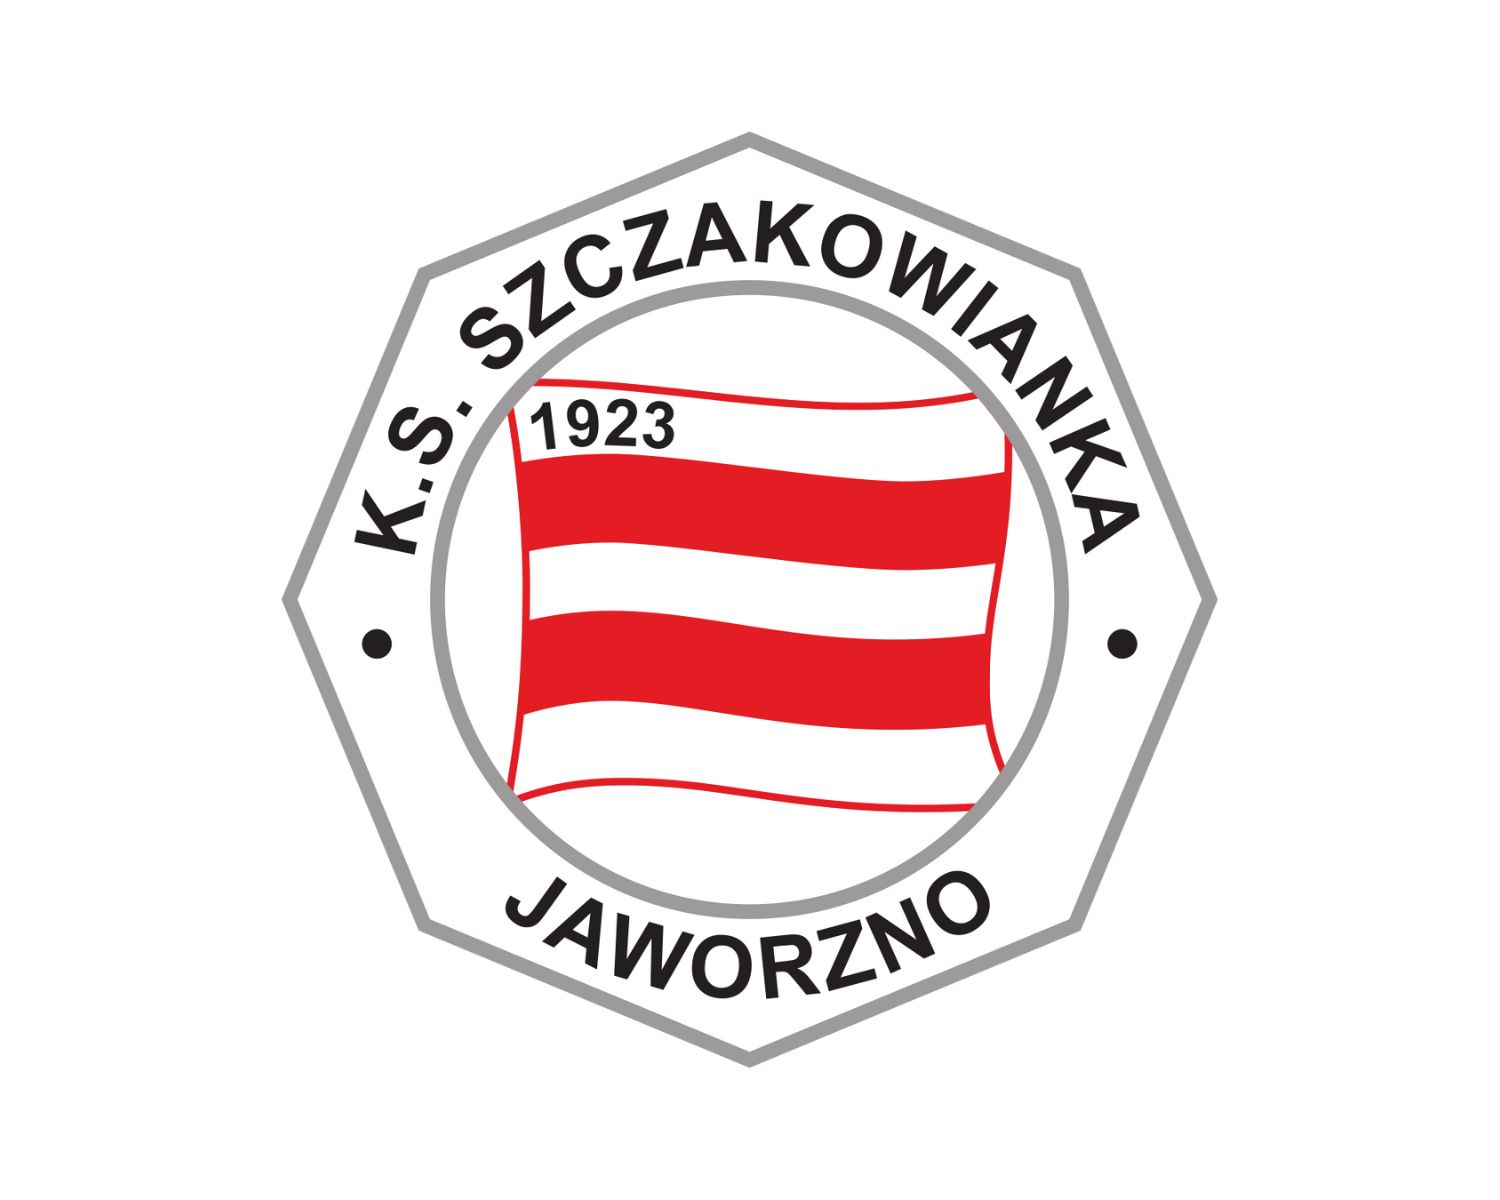 szczakowianka-jaworzno-22-football-club-facts